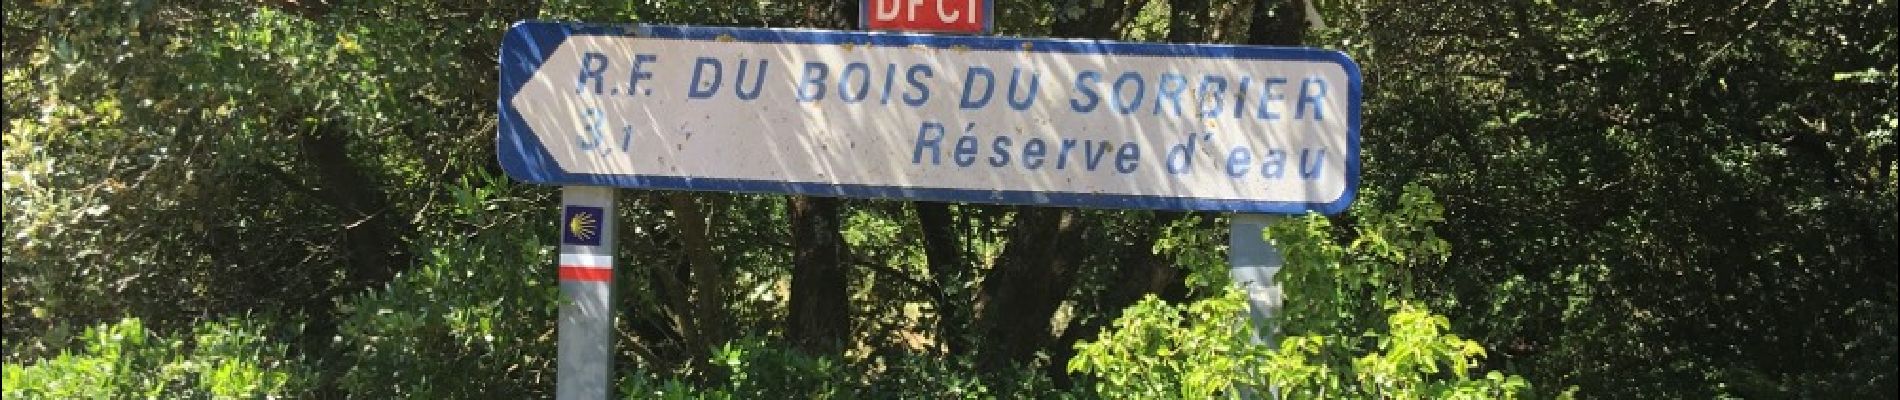 POI Bourg-Saint-Andéol - vers une réserve d'eau - Photo